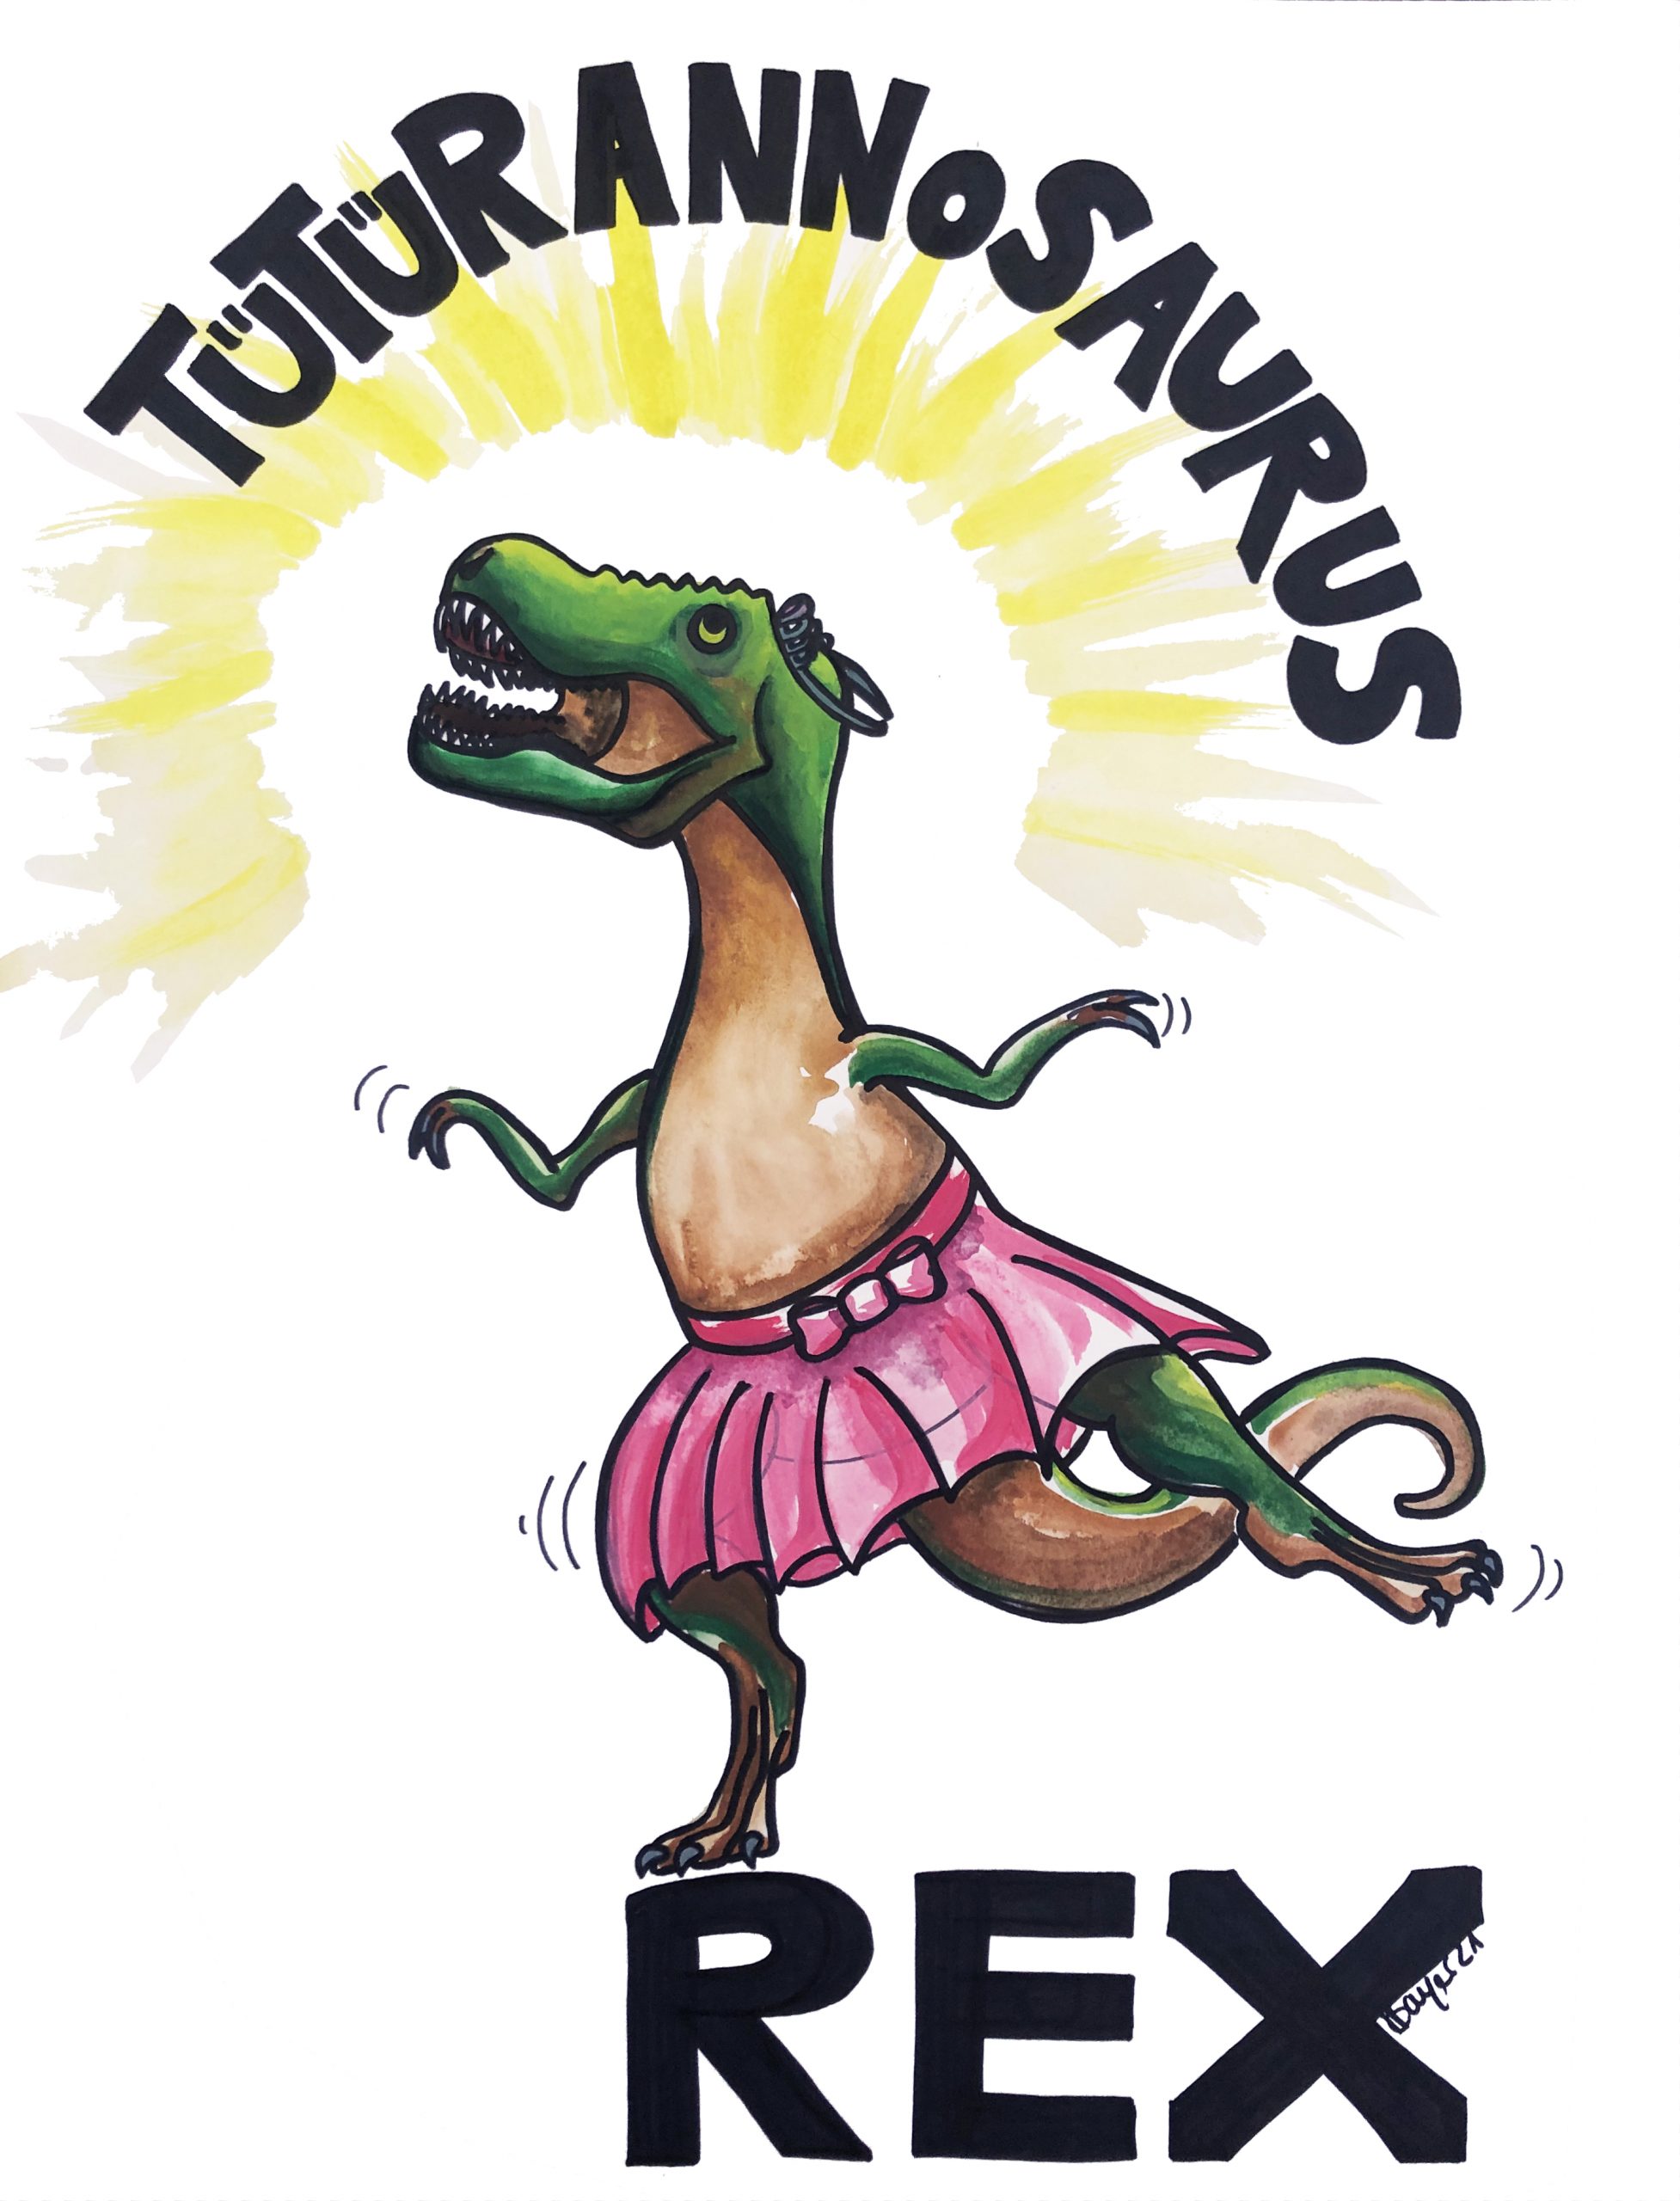 Eine Illustration mit einem T-REX der ein Tütü trägt. Schrift dazu: Tütürannosaurus Rex